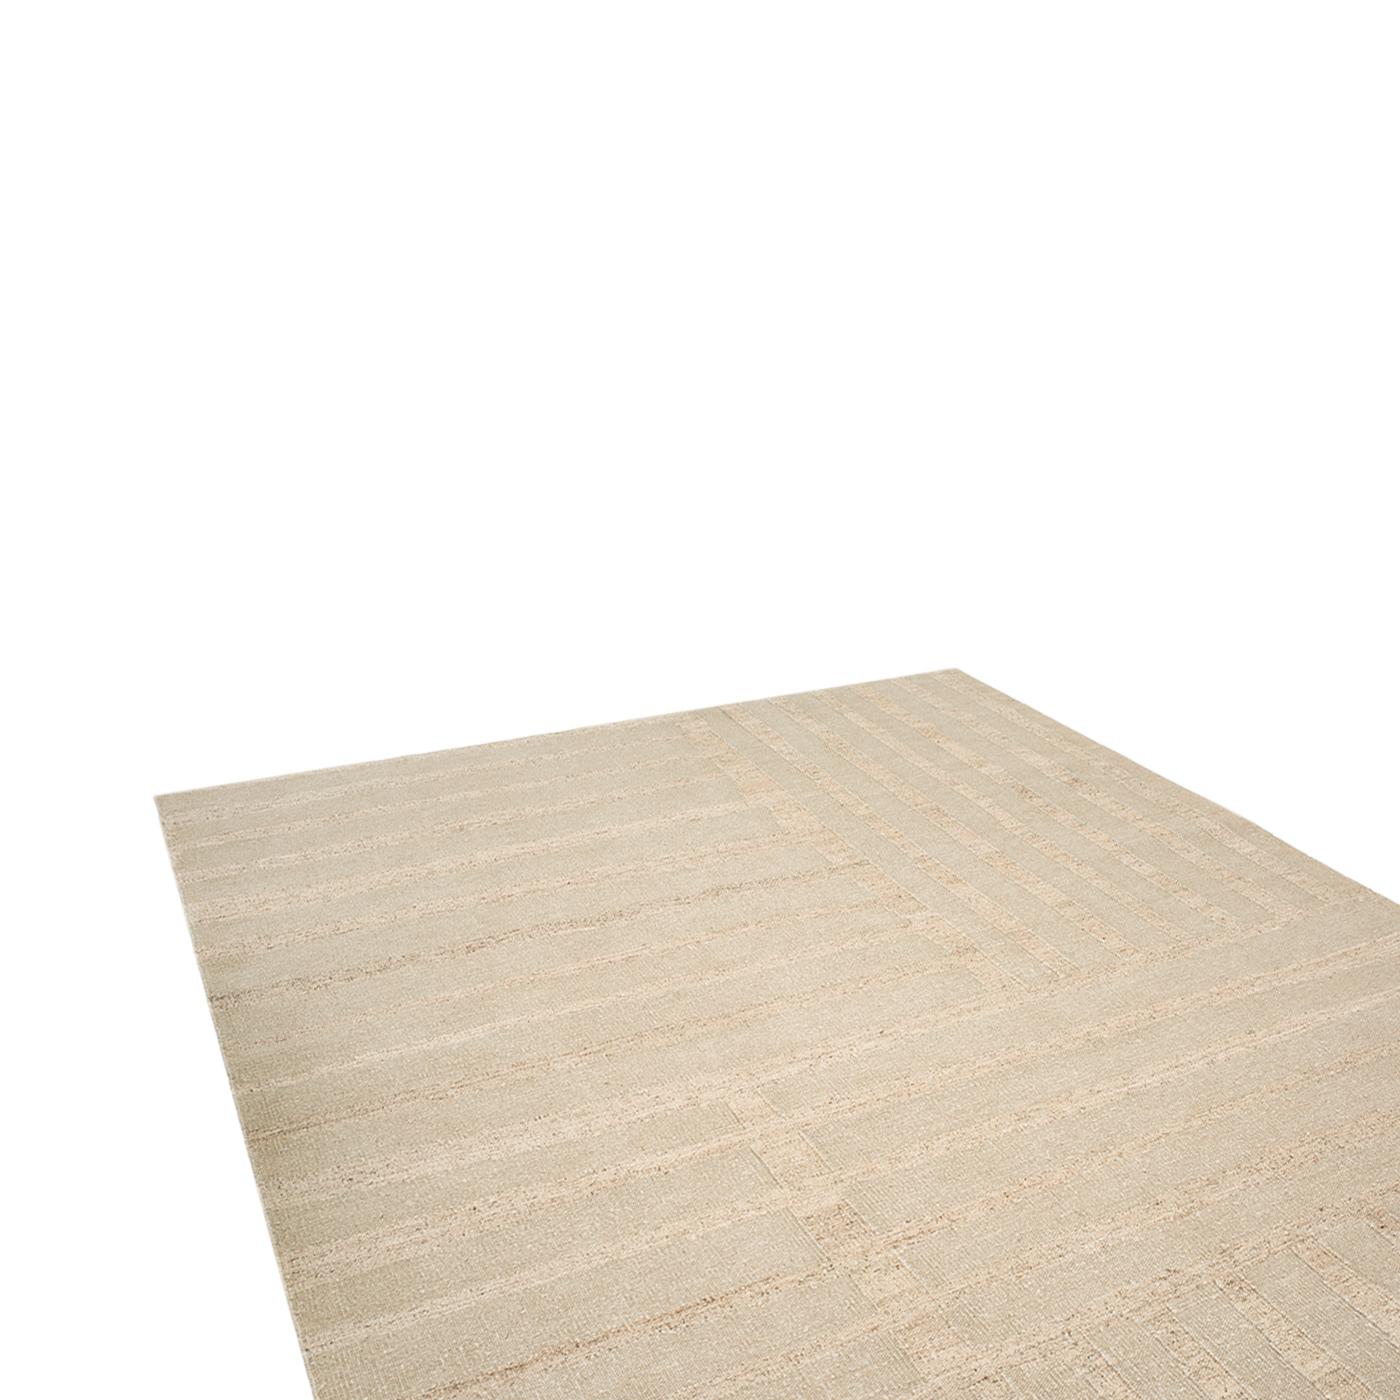 COULEUR : Nature
MATERIAL : 50% lin, 50% ortie
QUALITÉ : Tissage plat
ORIGINE : tapis tissé à la main au Népal
 
TAILLE DU TAPIS AFFICHÉ : 200cm x 300cm

Faisant partie de la collection Textures de Knots Rugs, Linen Nettle Stripe joue avec les tons